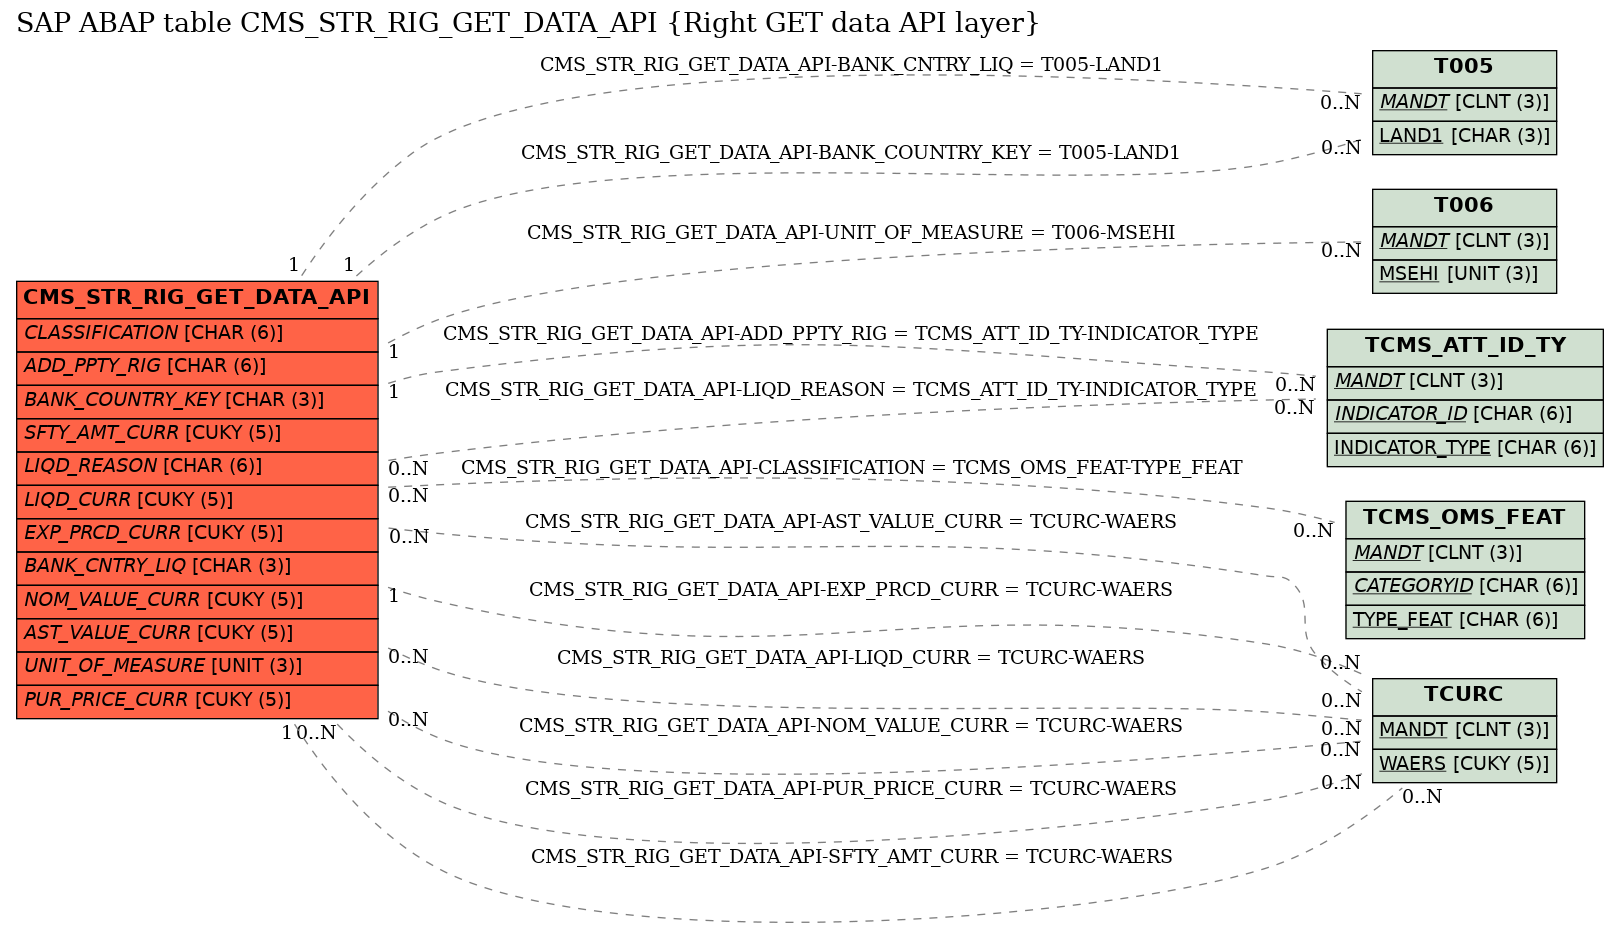 E-R Diagram for table CMS_STR_RIG_GET_DATA_API (Right GET data API layer)